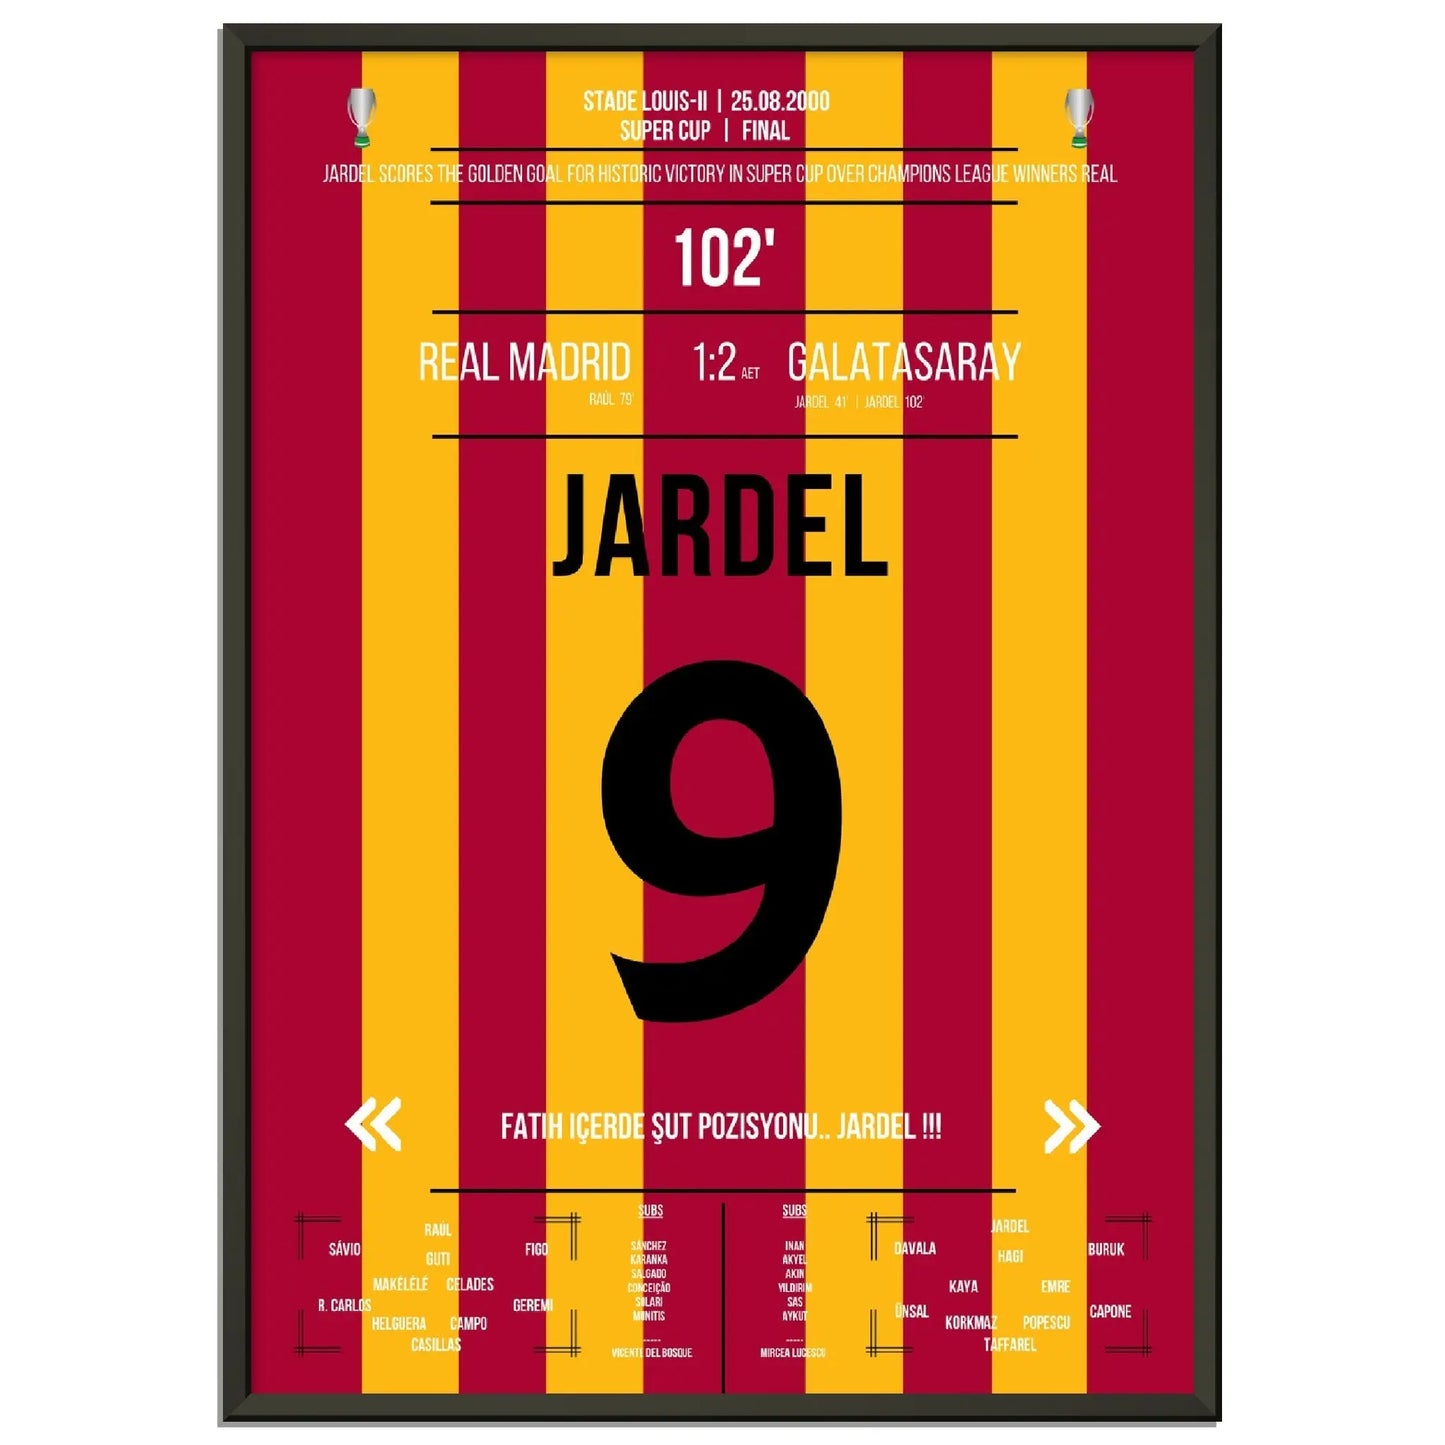 Mario Jardel Golden Goal gegen Real im Super Cup Finale 2000 